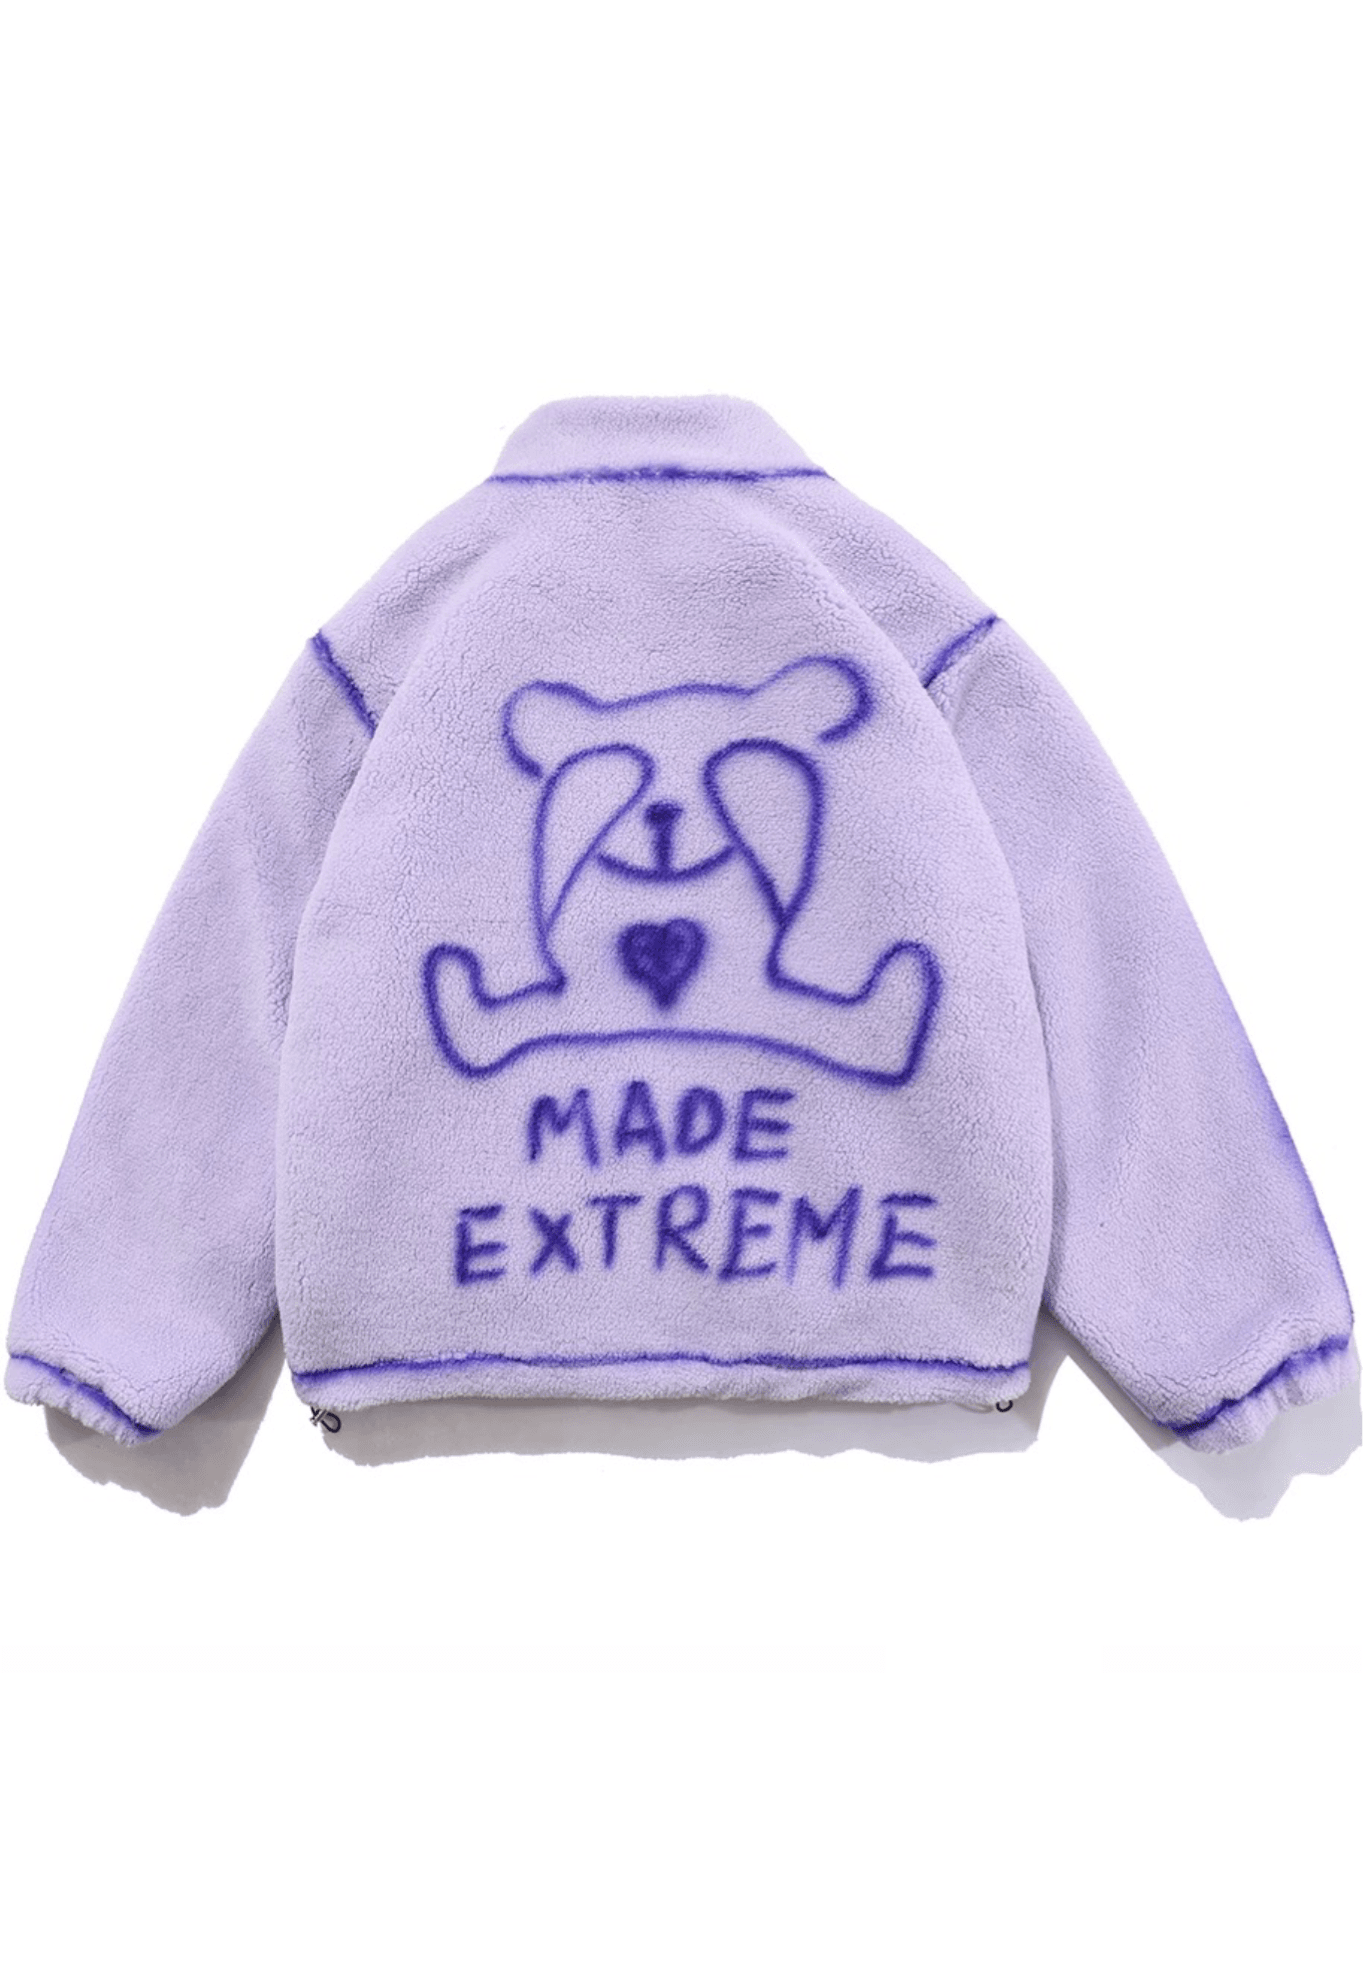 ‘Made Extreme’ Plush Jacket - shopuntitled.co